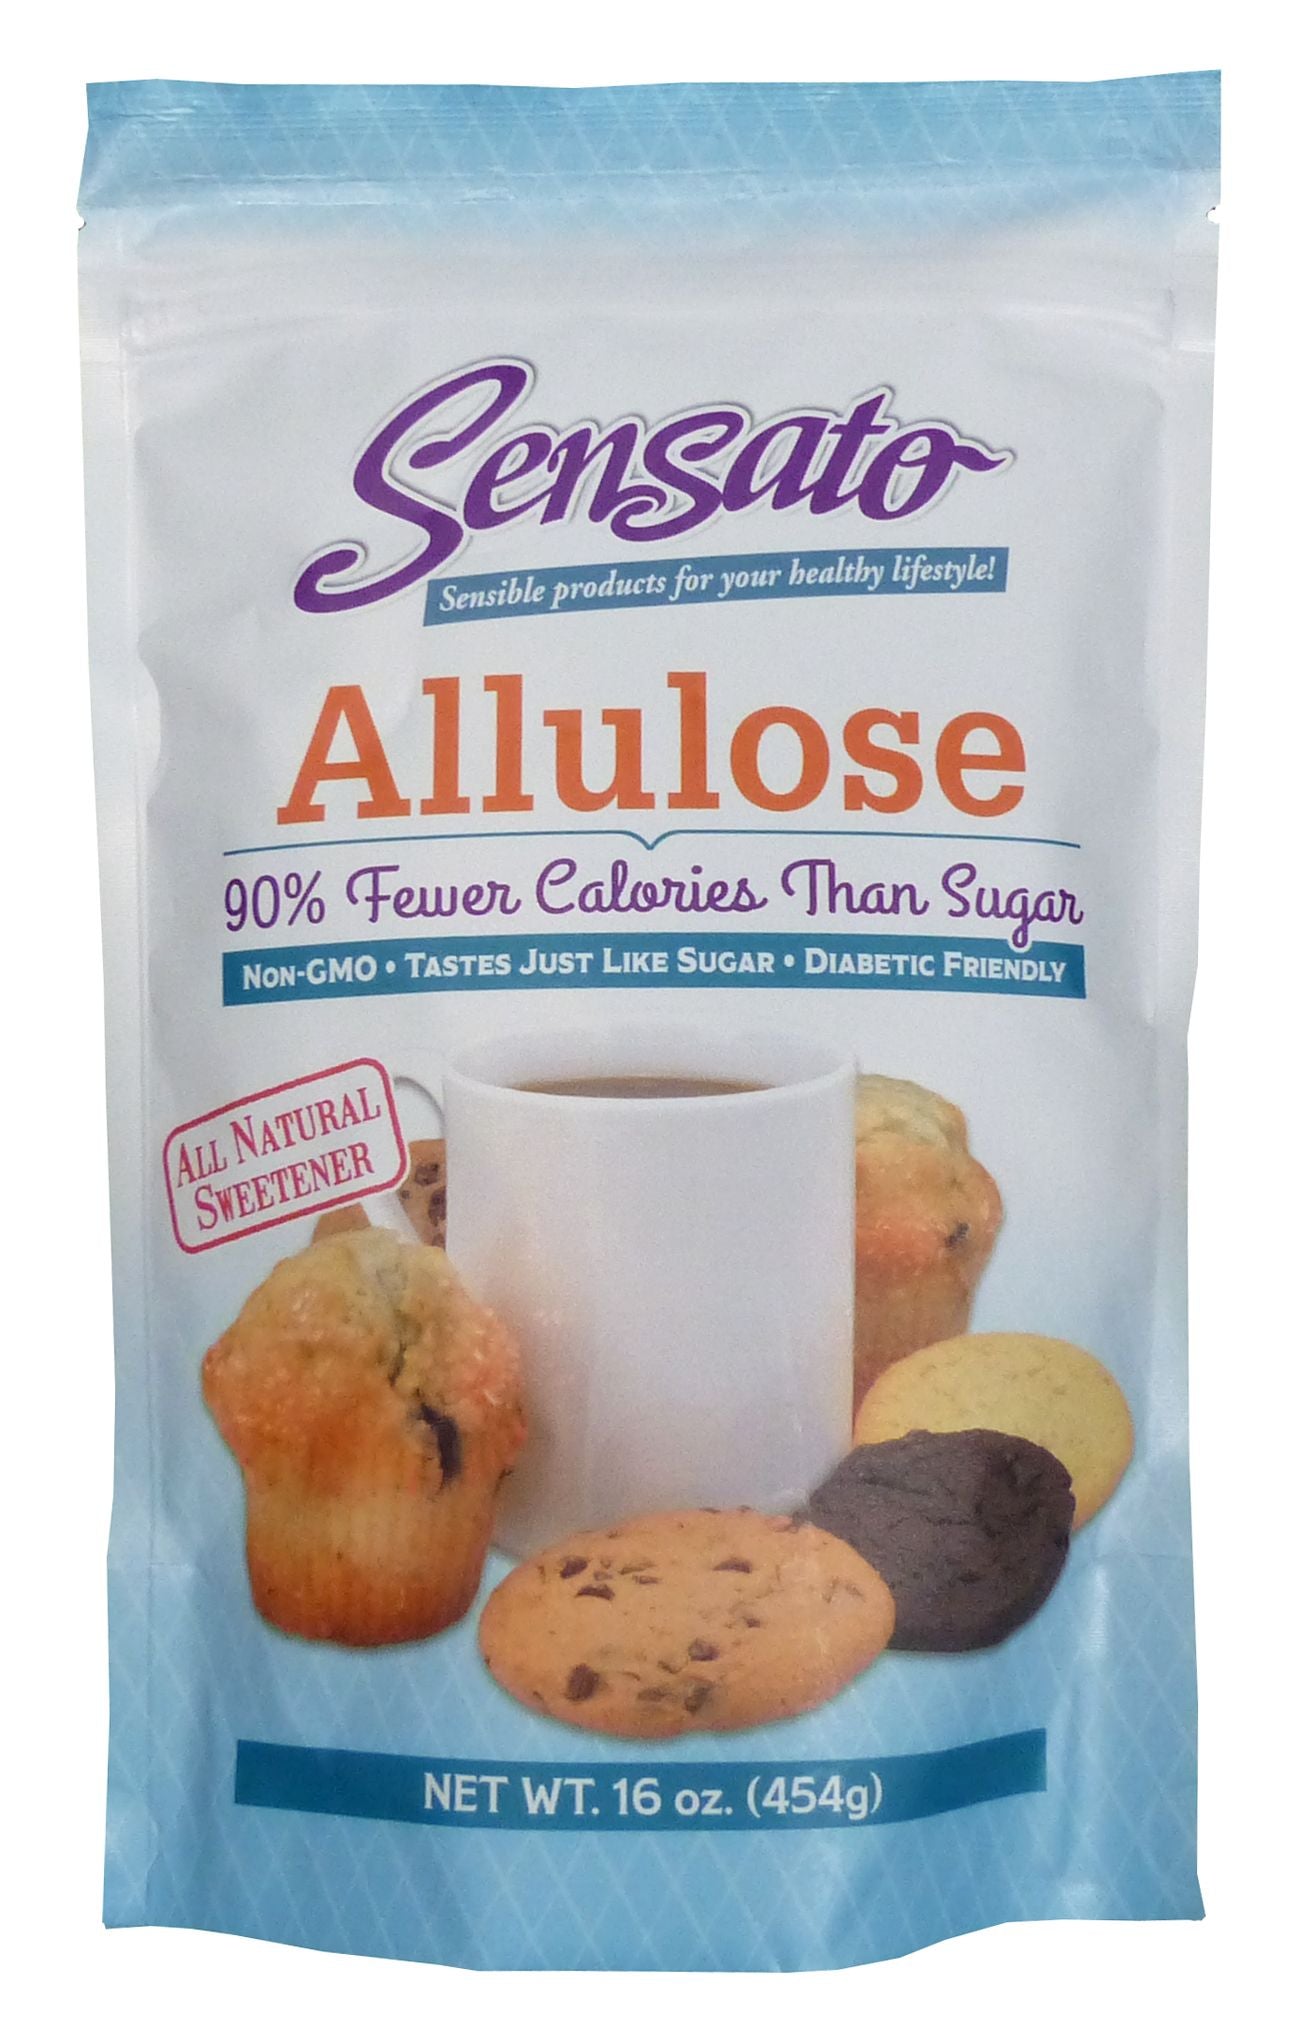 Sensato Allulose 16 oz by Sensato - Exclusive Offer at $9.99 on Netrition